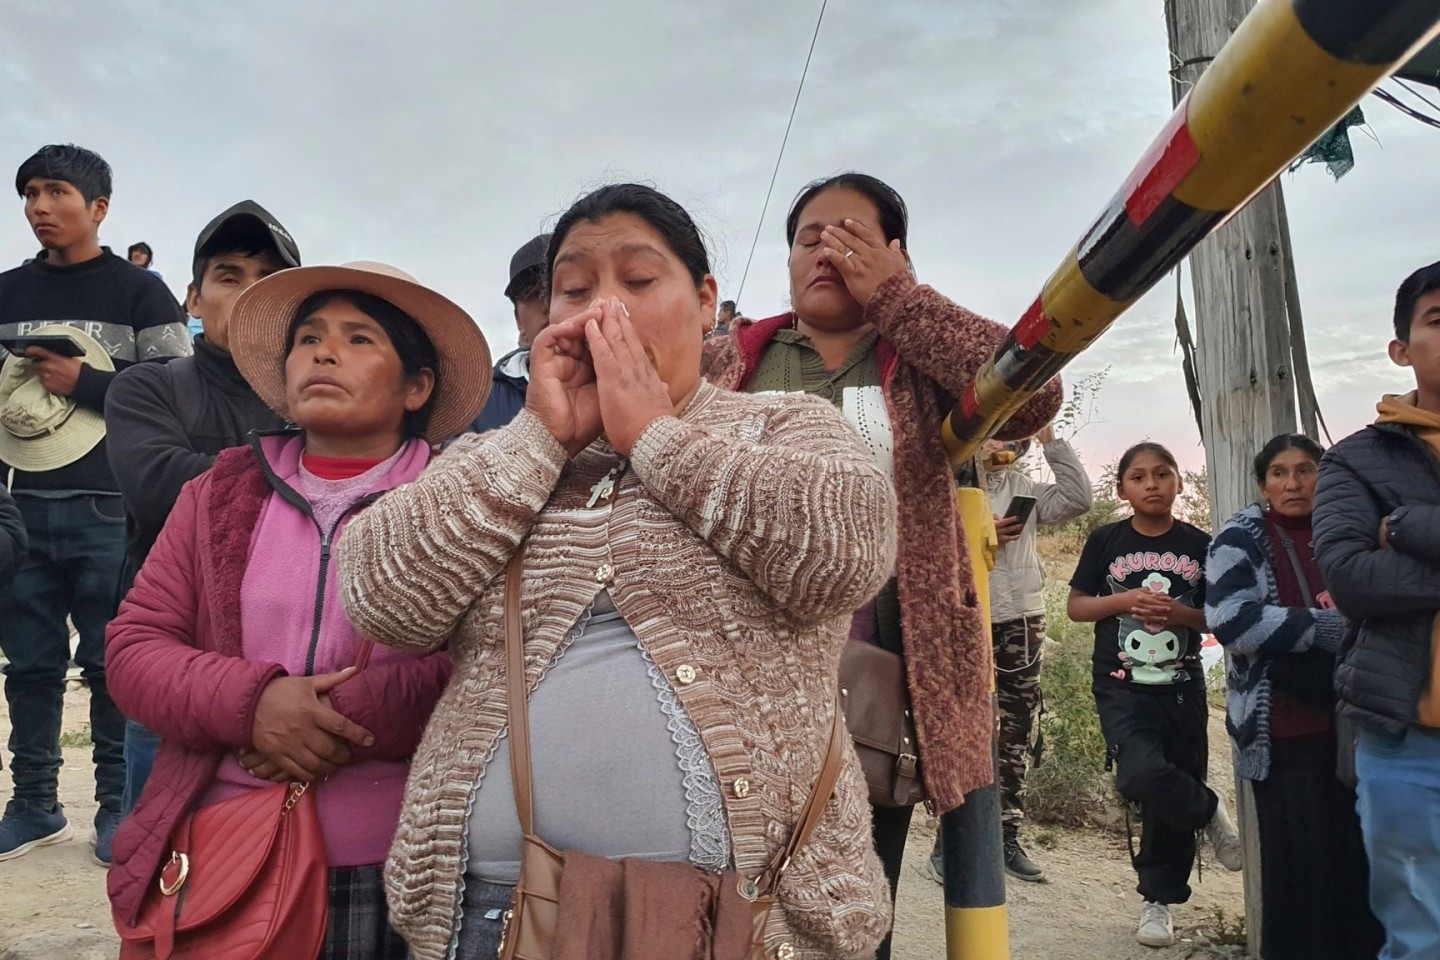 Angehörige von eingeschlossenen Bergleuten vor der Yanaquihua-Mine in Peru.